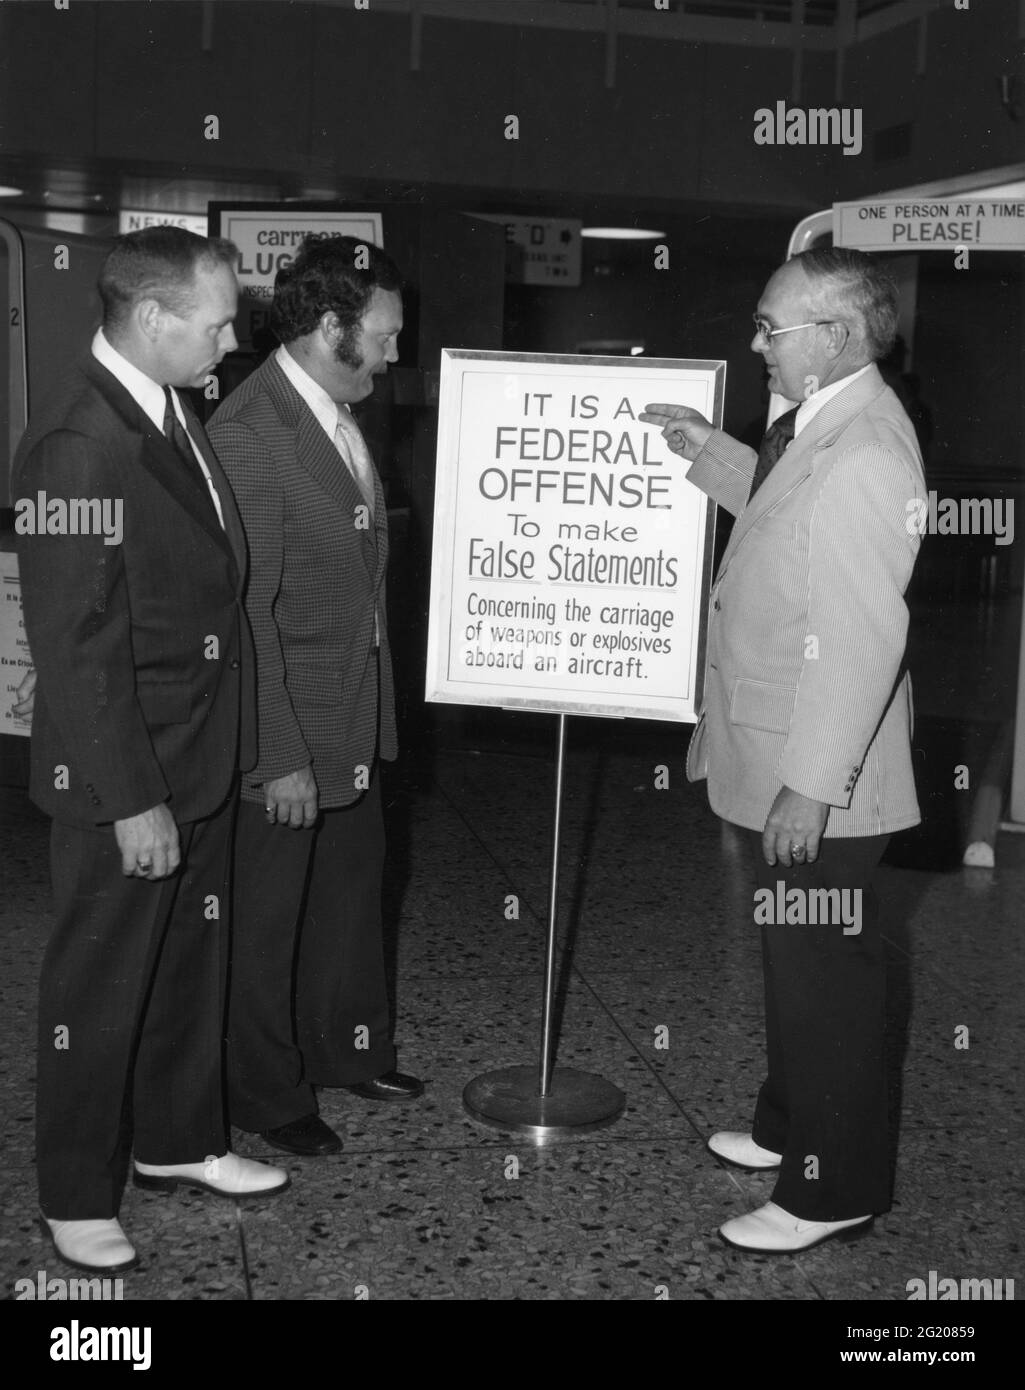 Les responsables de l'aéroport voient de nouvelles affiches avertissant les passagers de sanctions pour avoir fait de fausses déclarations concernant le détournement ou le transport d'armes à bord d'un avion, pas de lieu, 1970. (Photo de la Federal Aviation Administration/RBM Vintage Images) Banque D'Images